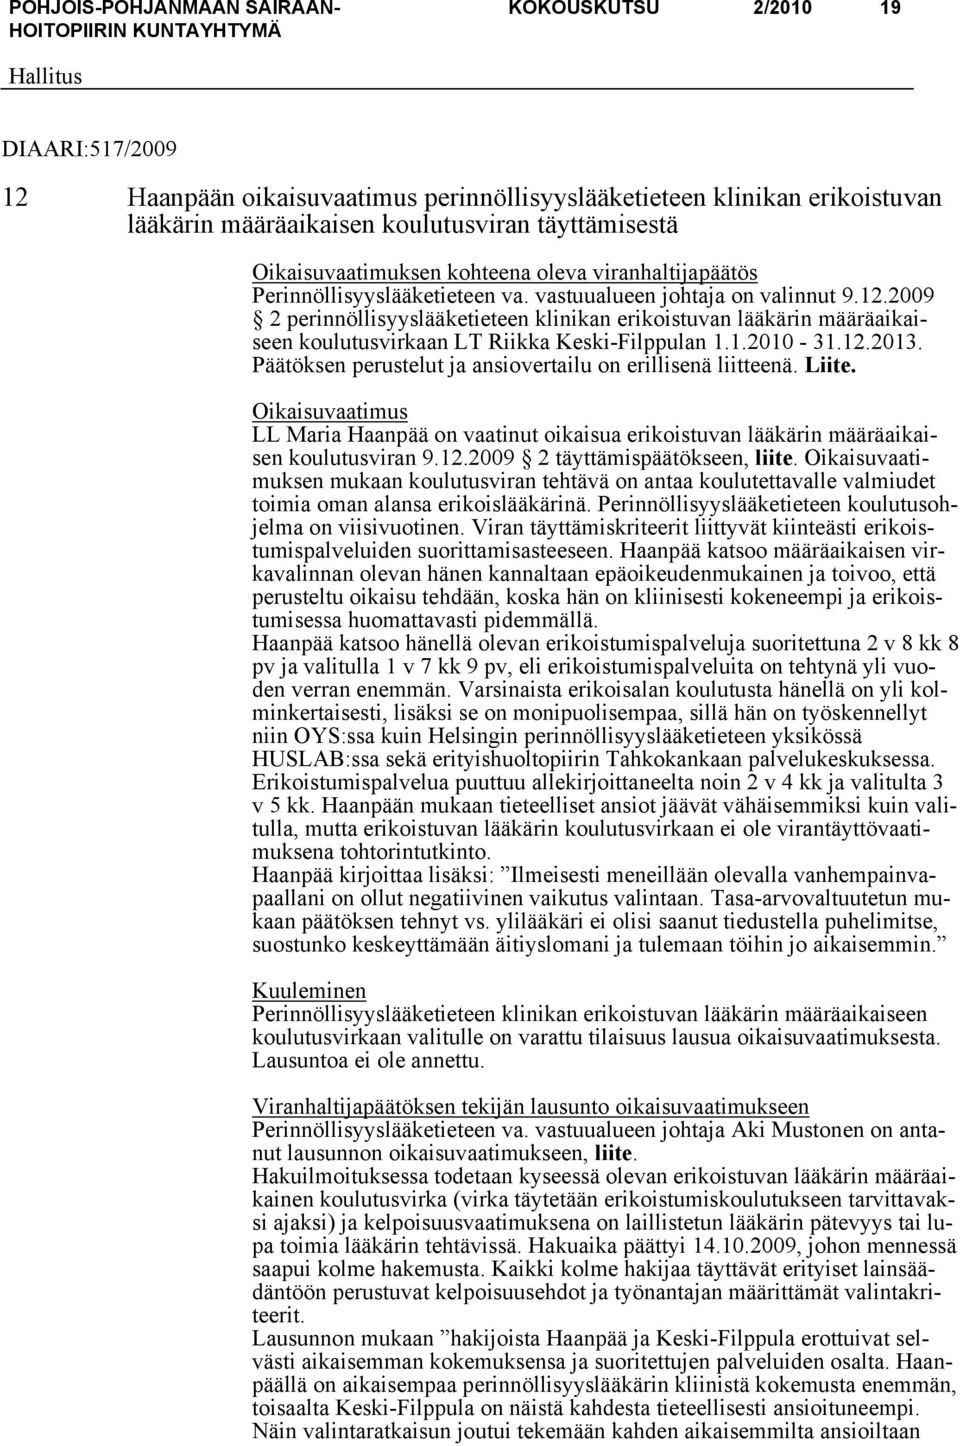 2009 2 perinnöllisyyslääketieteen klinikan erikoistuvan lääkärin määräaikaiseen koulutusvirkaan LT Riikka Keski-Filppulan 1.1.2010-31.12.2013.